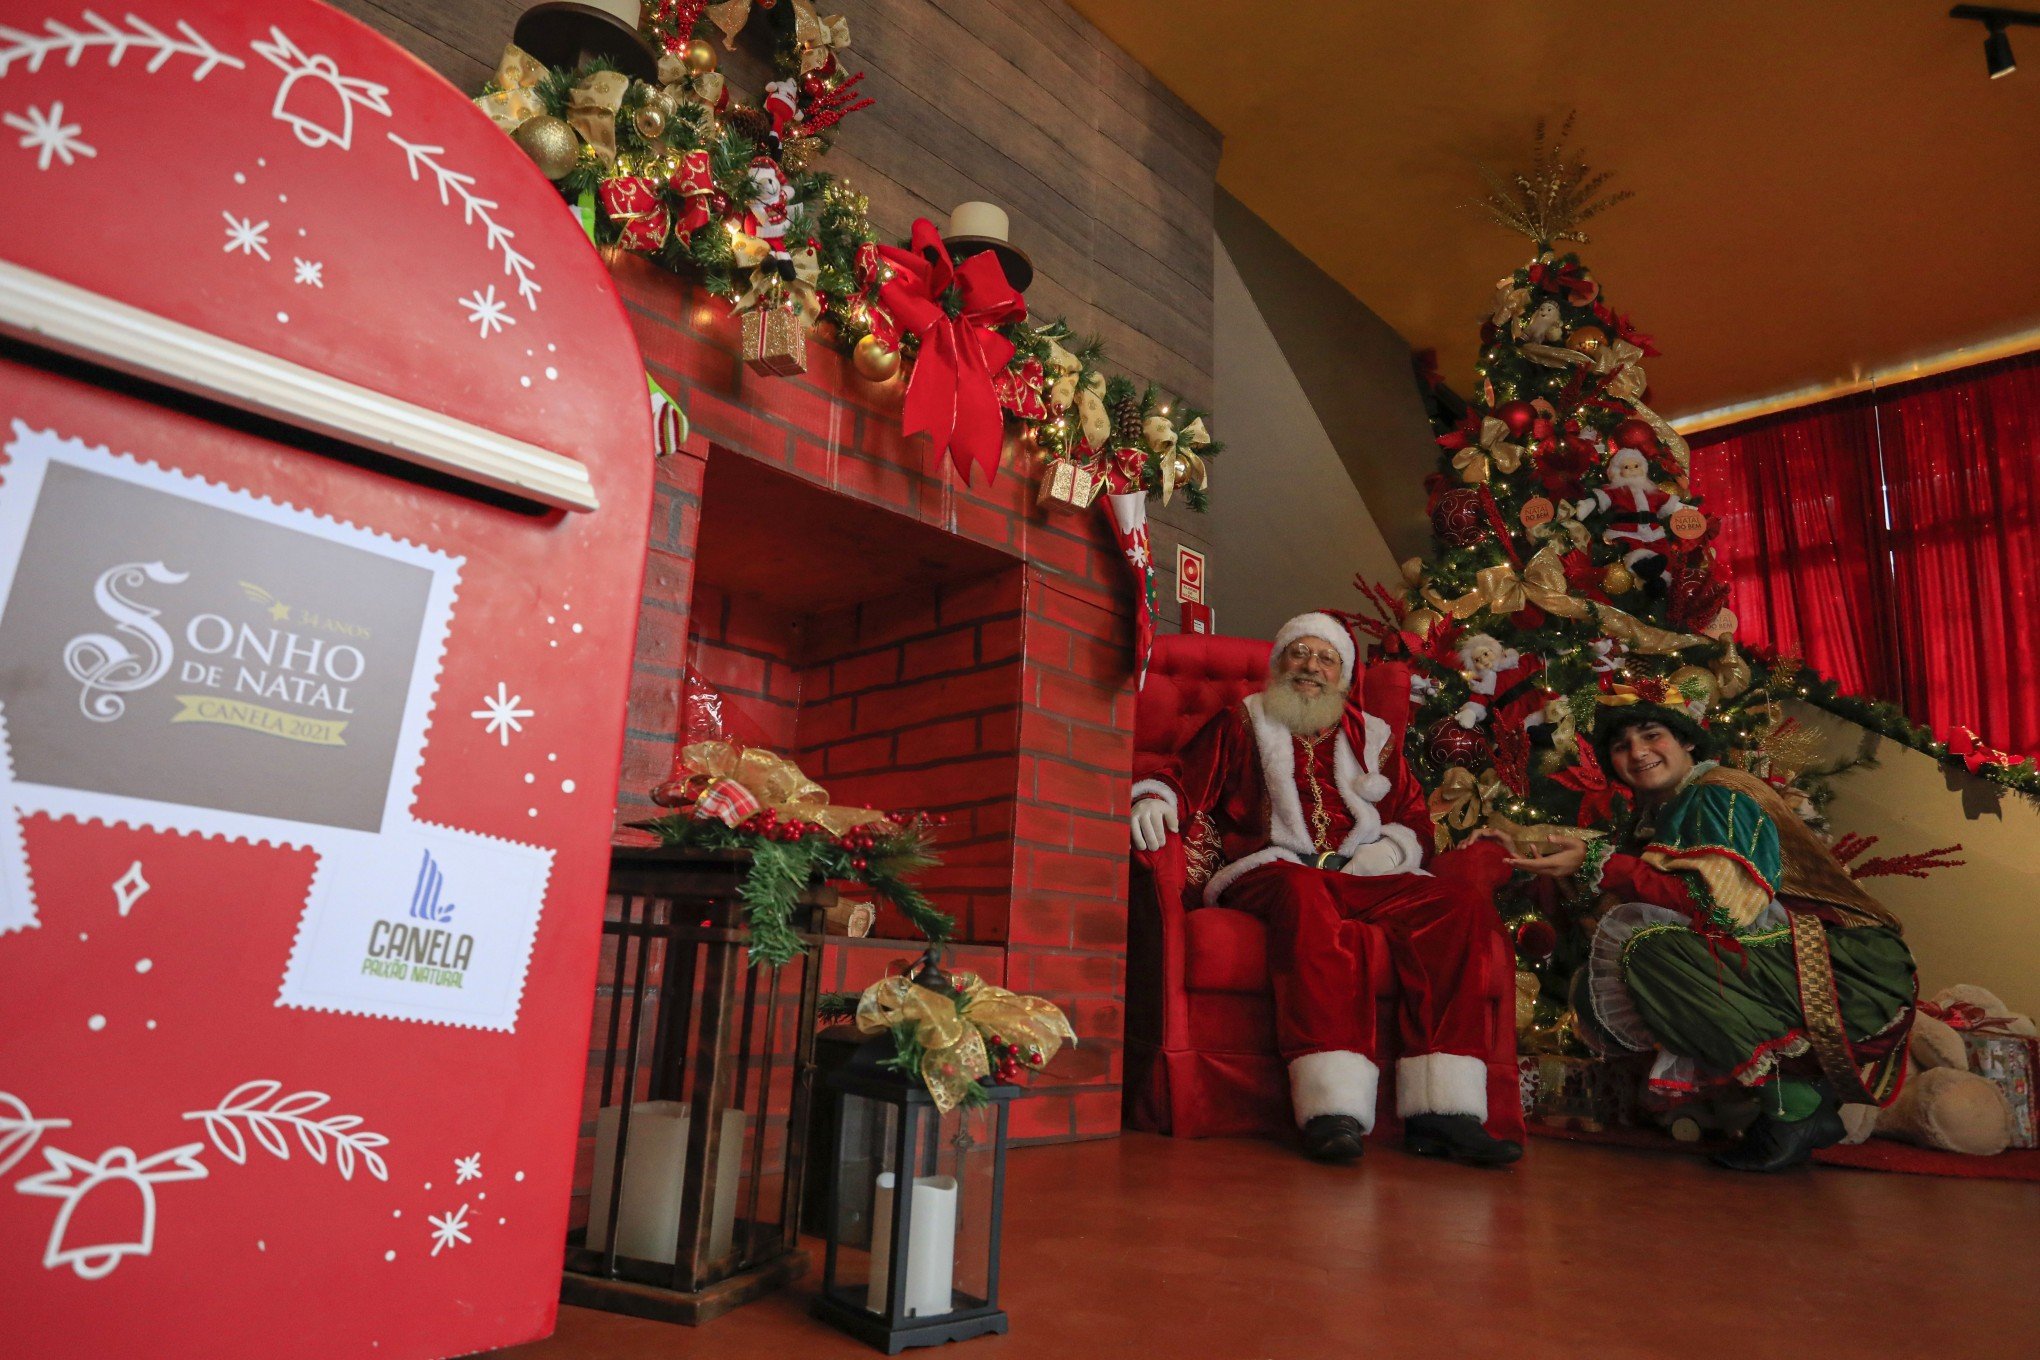 Sonho de Natal de Canela lança campanha para adoção de cartinhas - Região -  Jornal de Gramado